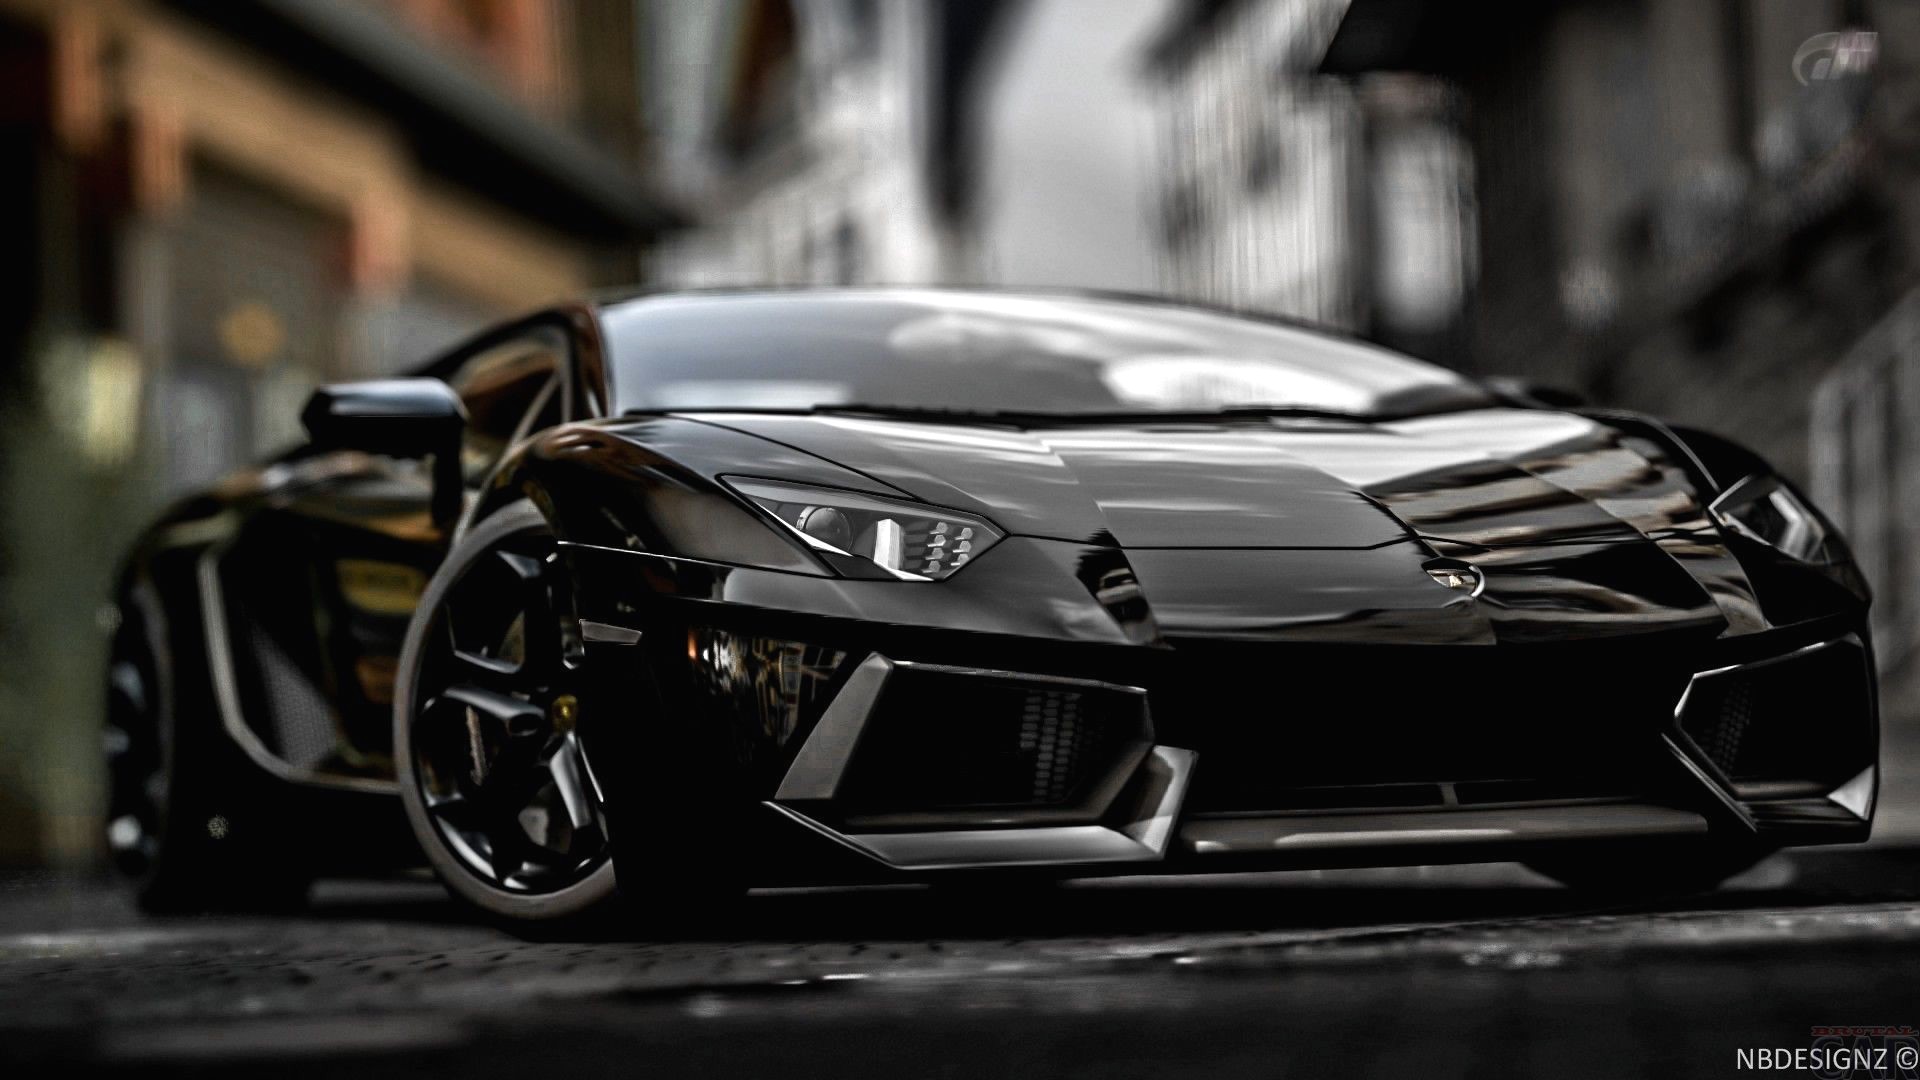 New Lamborghini Aventador Concept Future Cars Models